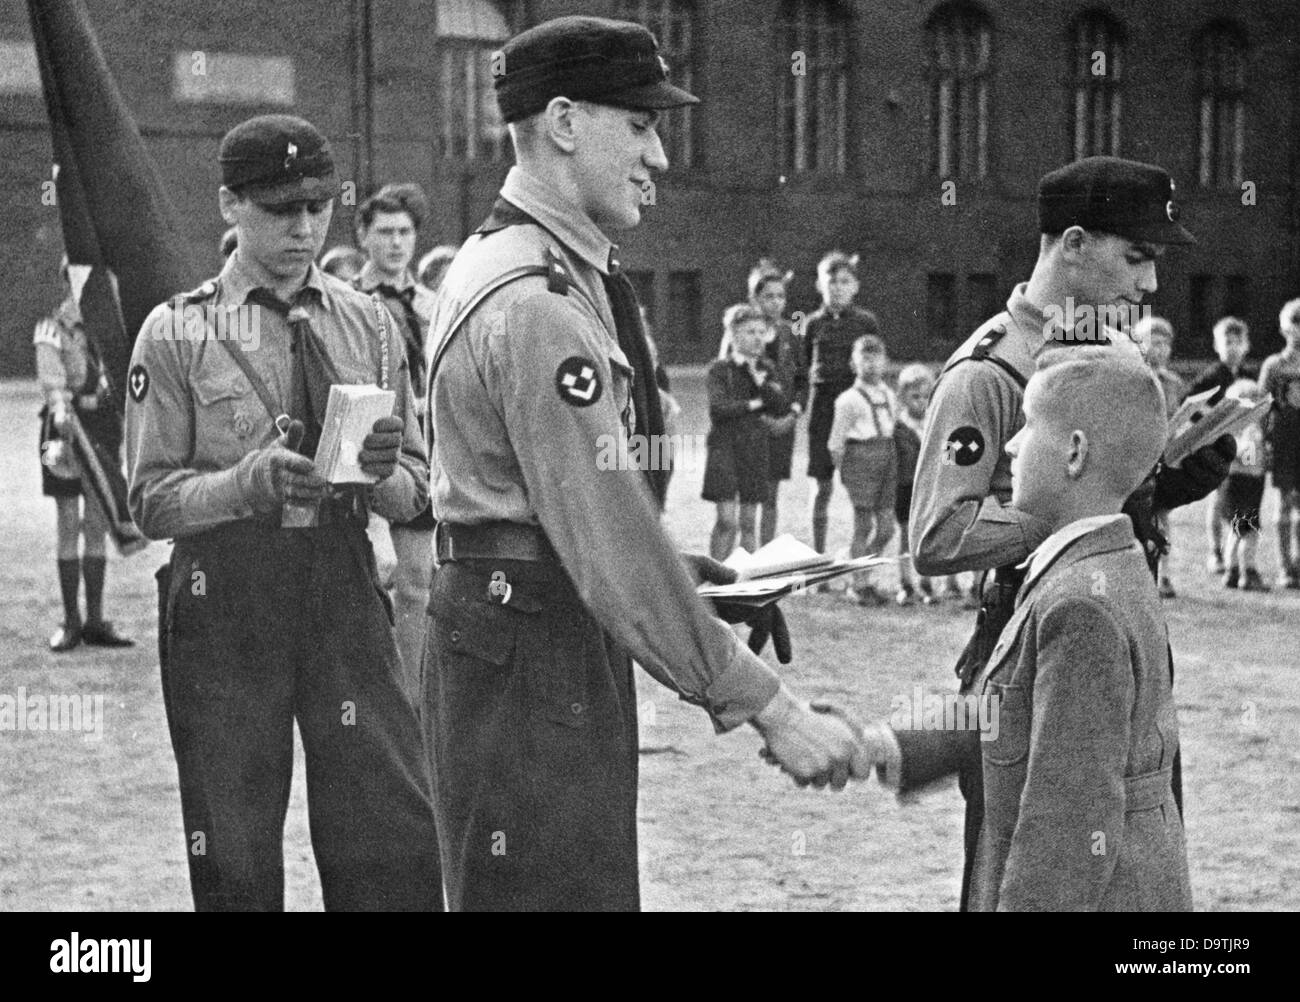 Un garçon de dix ans est admis à la Jeunesse allemande, l'organisation de jeunesse de la Jeunesse d'Hitler (DJ) pour les garçons de 10 à 14 ans, le 19 avril 1943, à Berlin. Fotoarchiv für Zeitgeschichte Banque D'Images